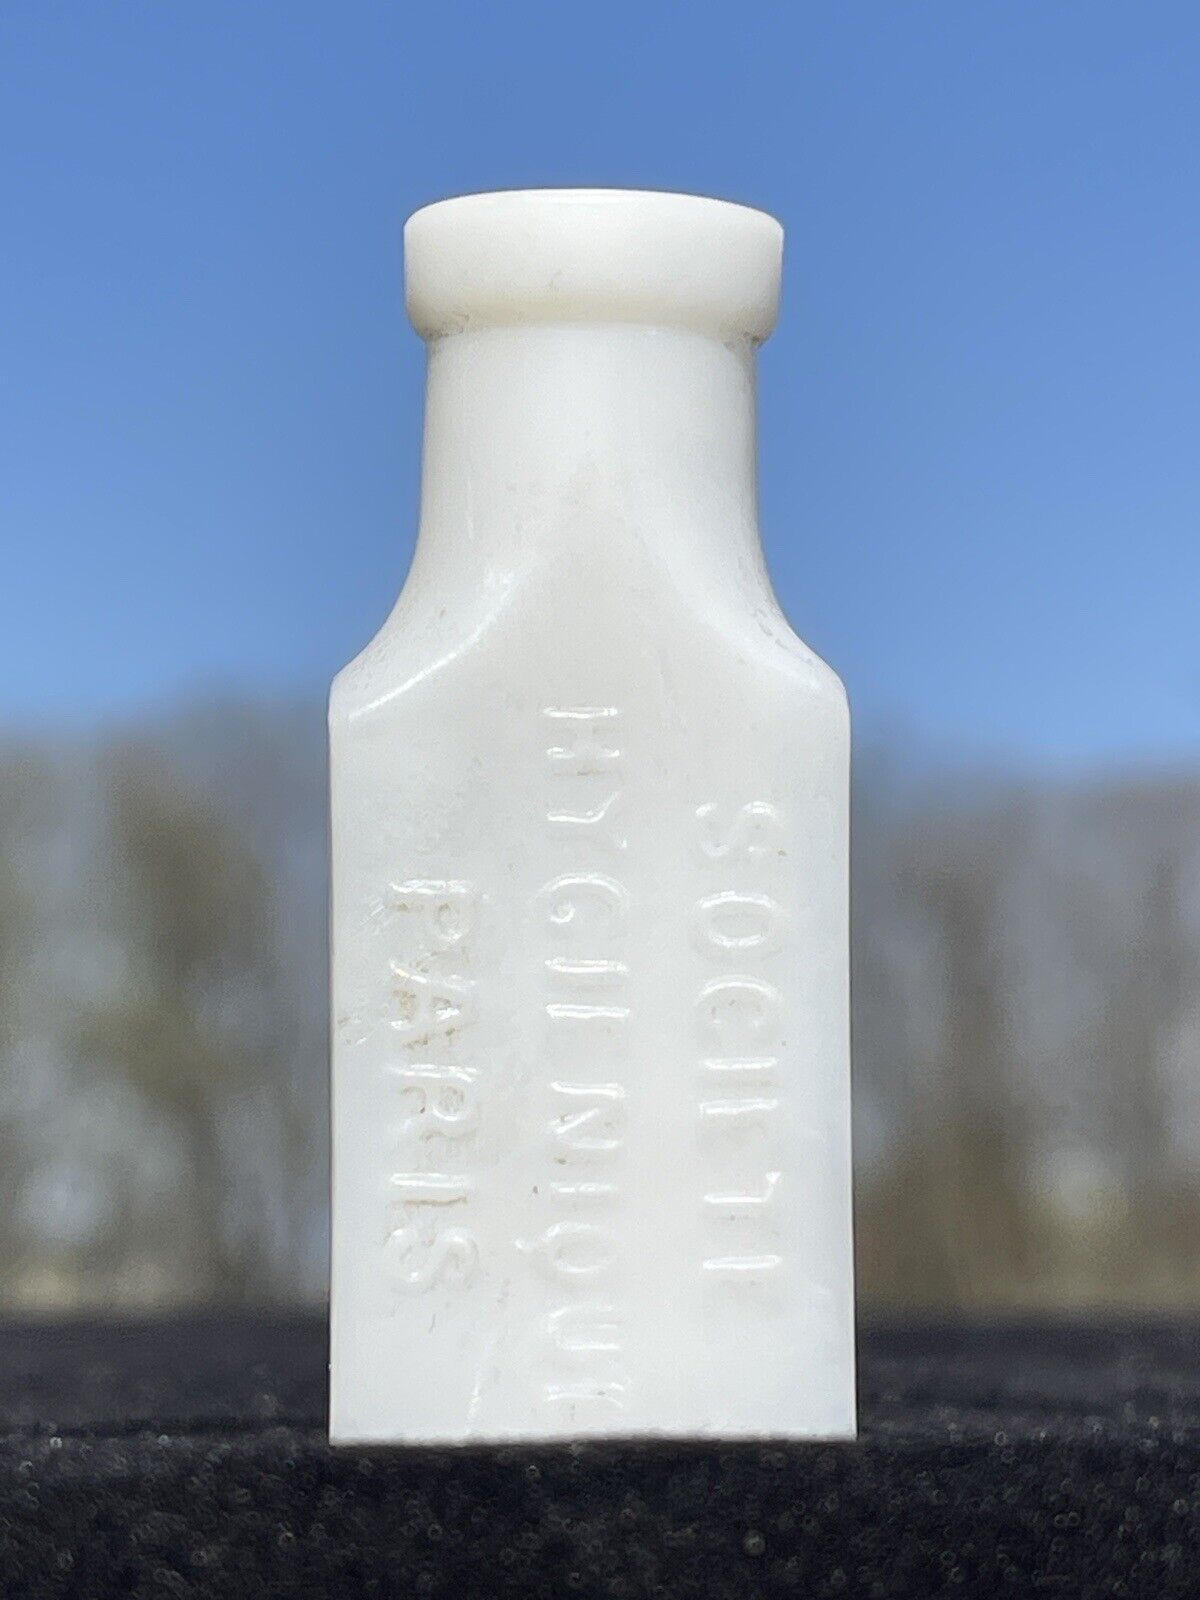 Antique milk glass bottle “SOCIETE HYGIENIOUE PARIS”